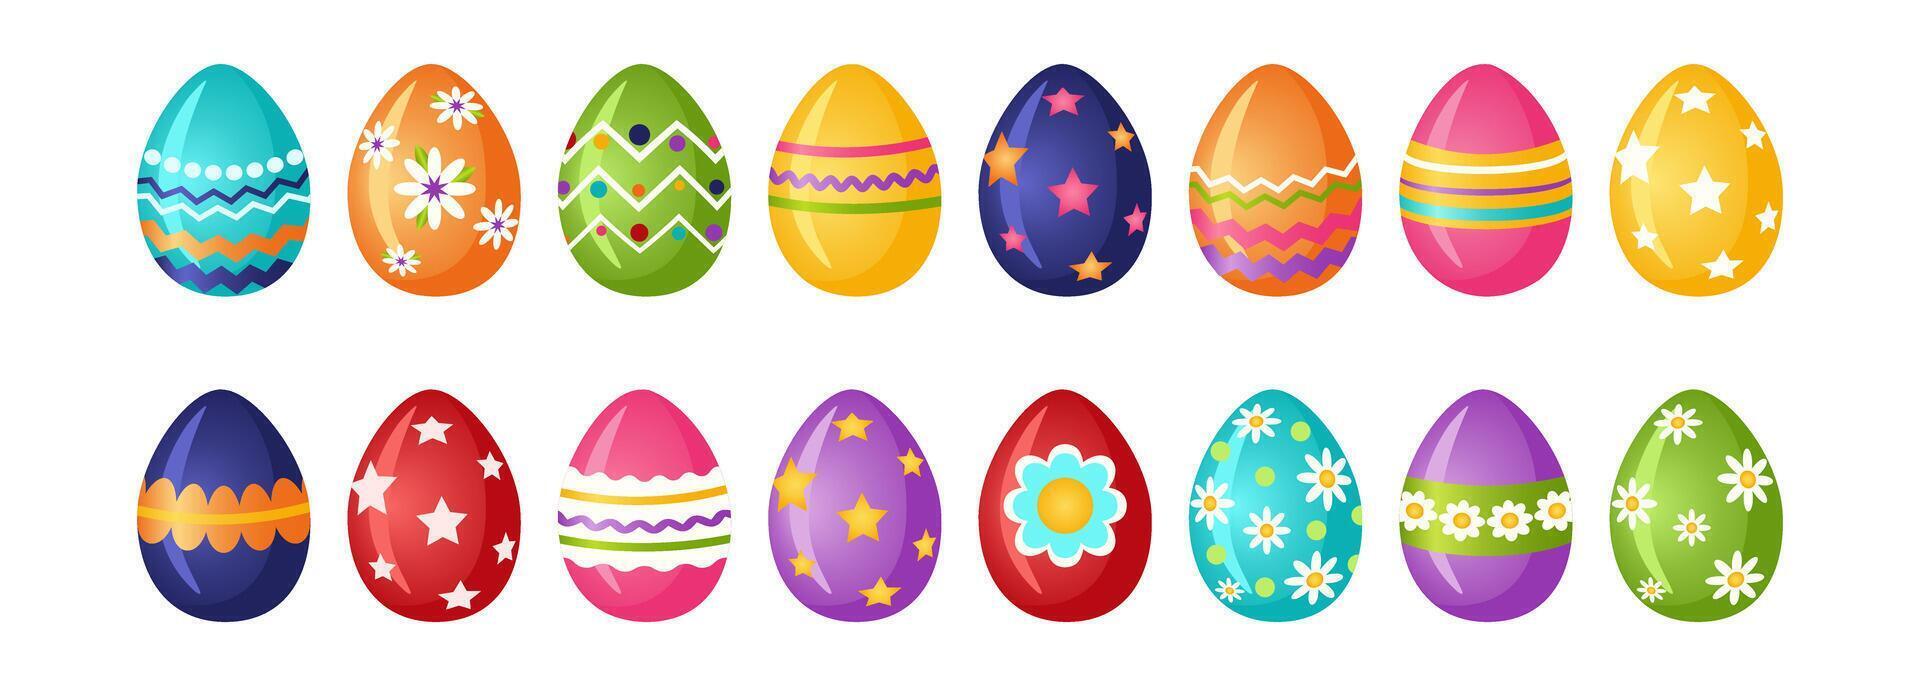 reeks van Pasen eieren. de traditioneel symbool van Pasen is een geschilderd ei met patronen. vector illustratie.